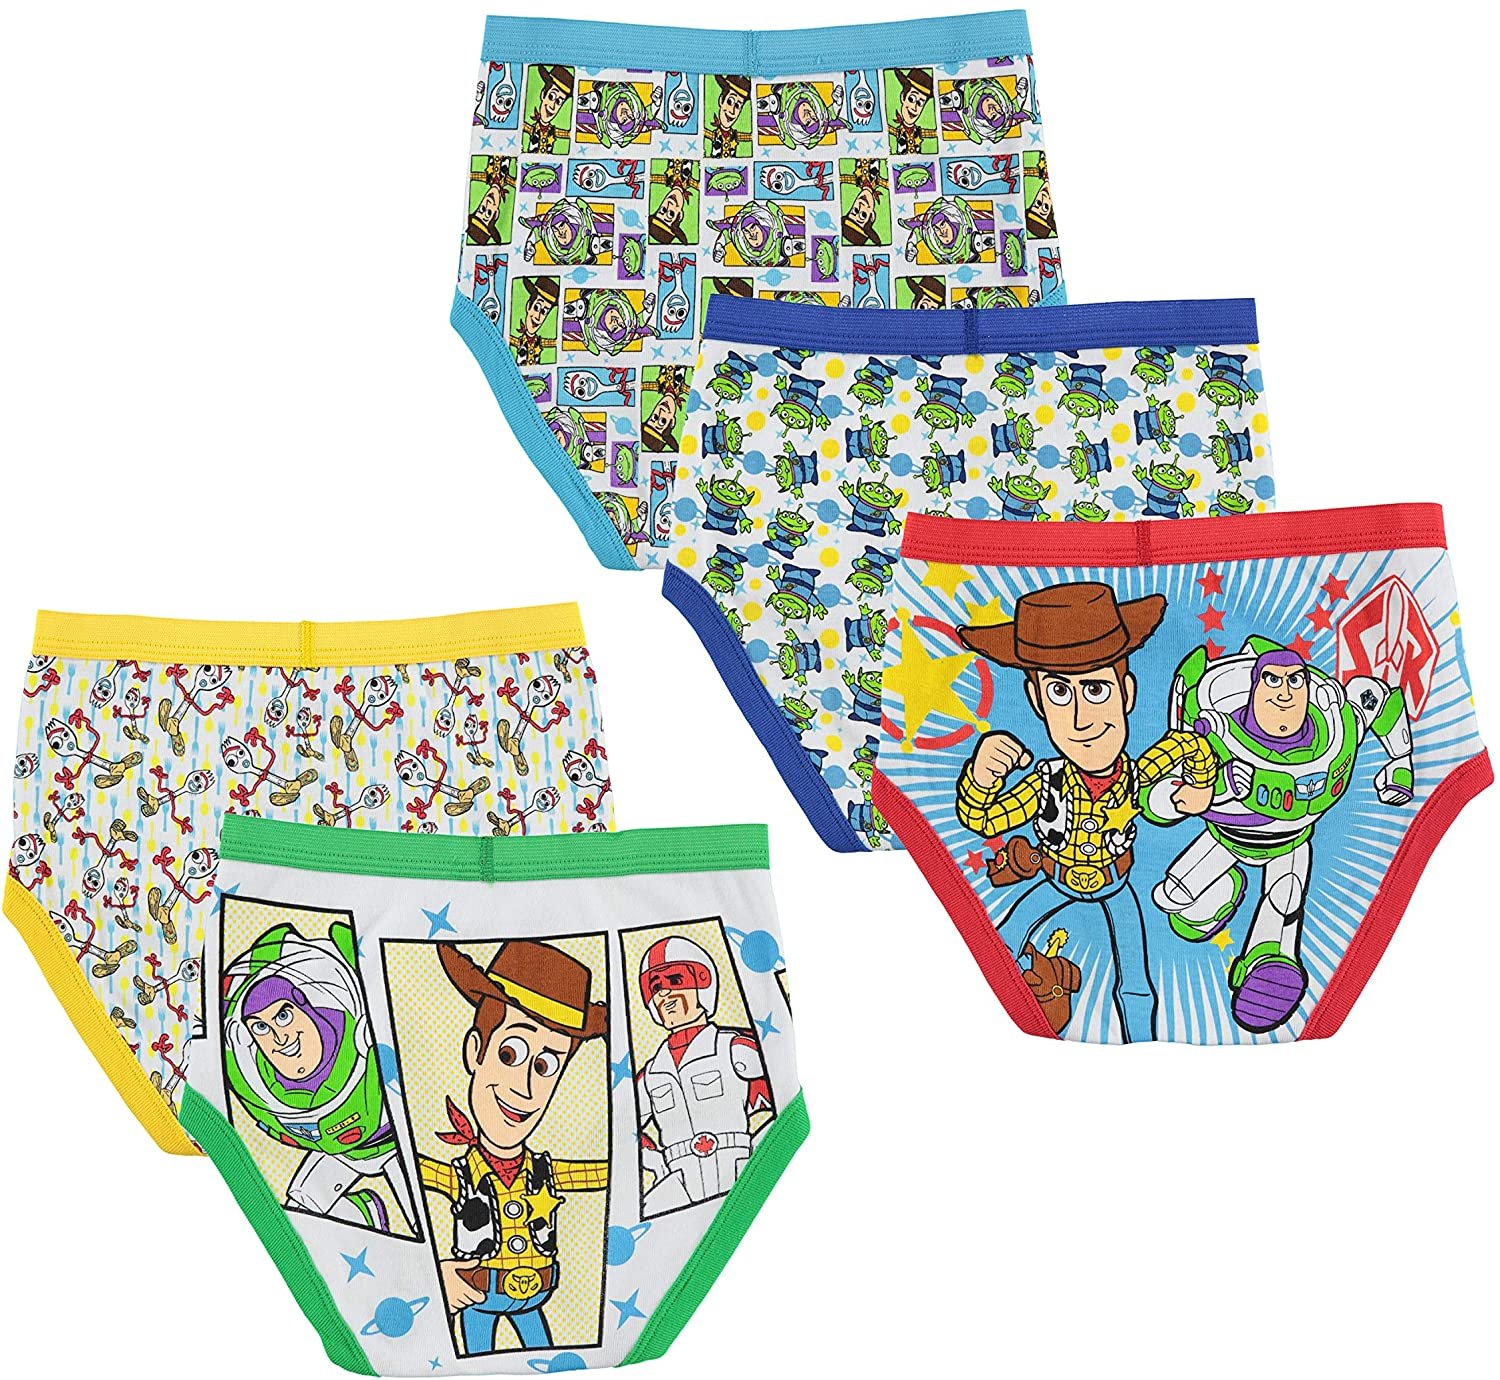  Toy Story Underwear